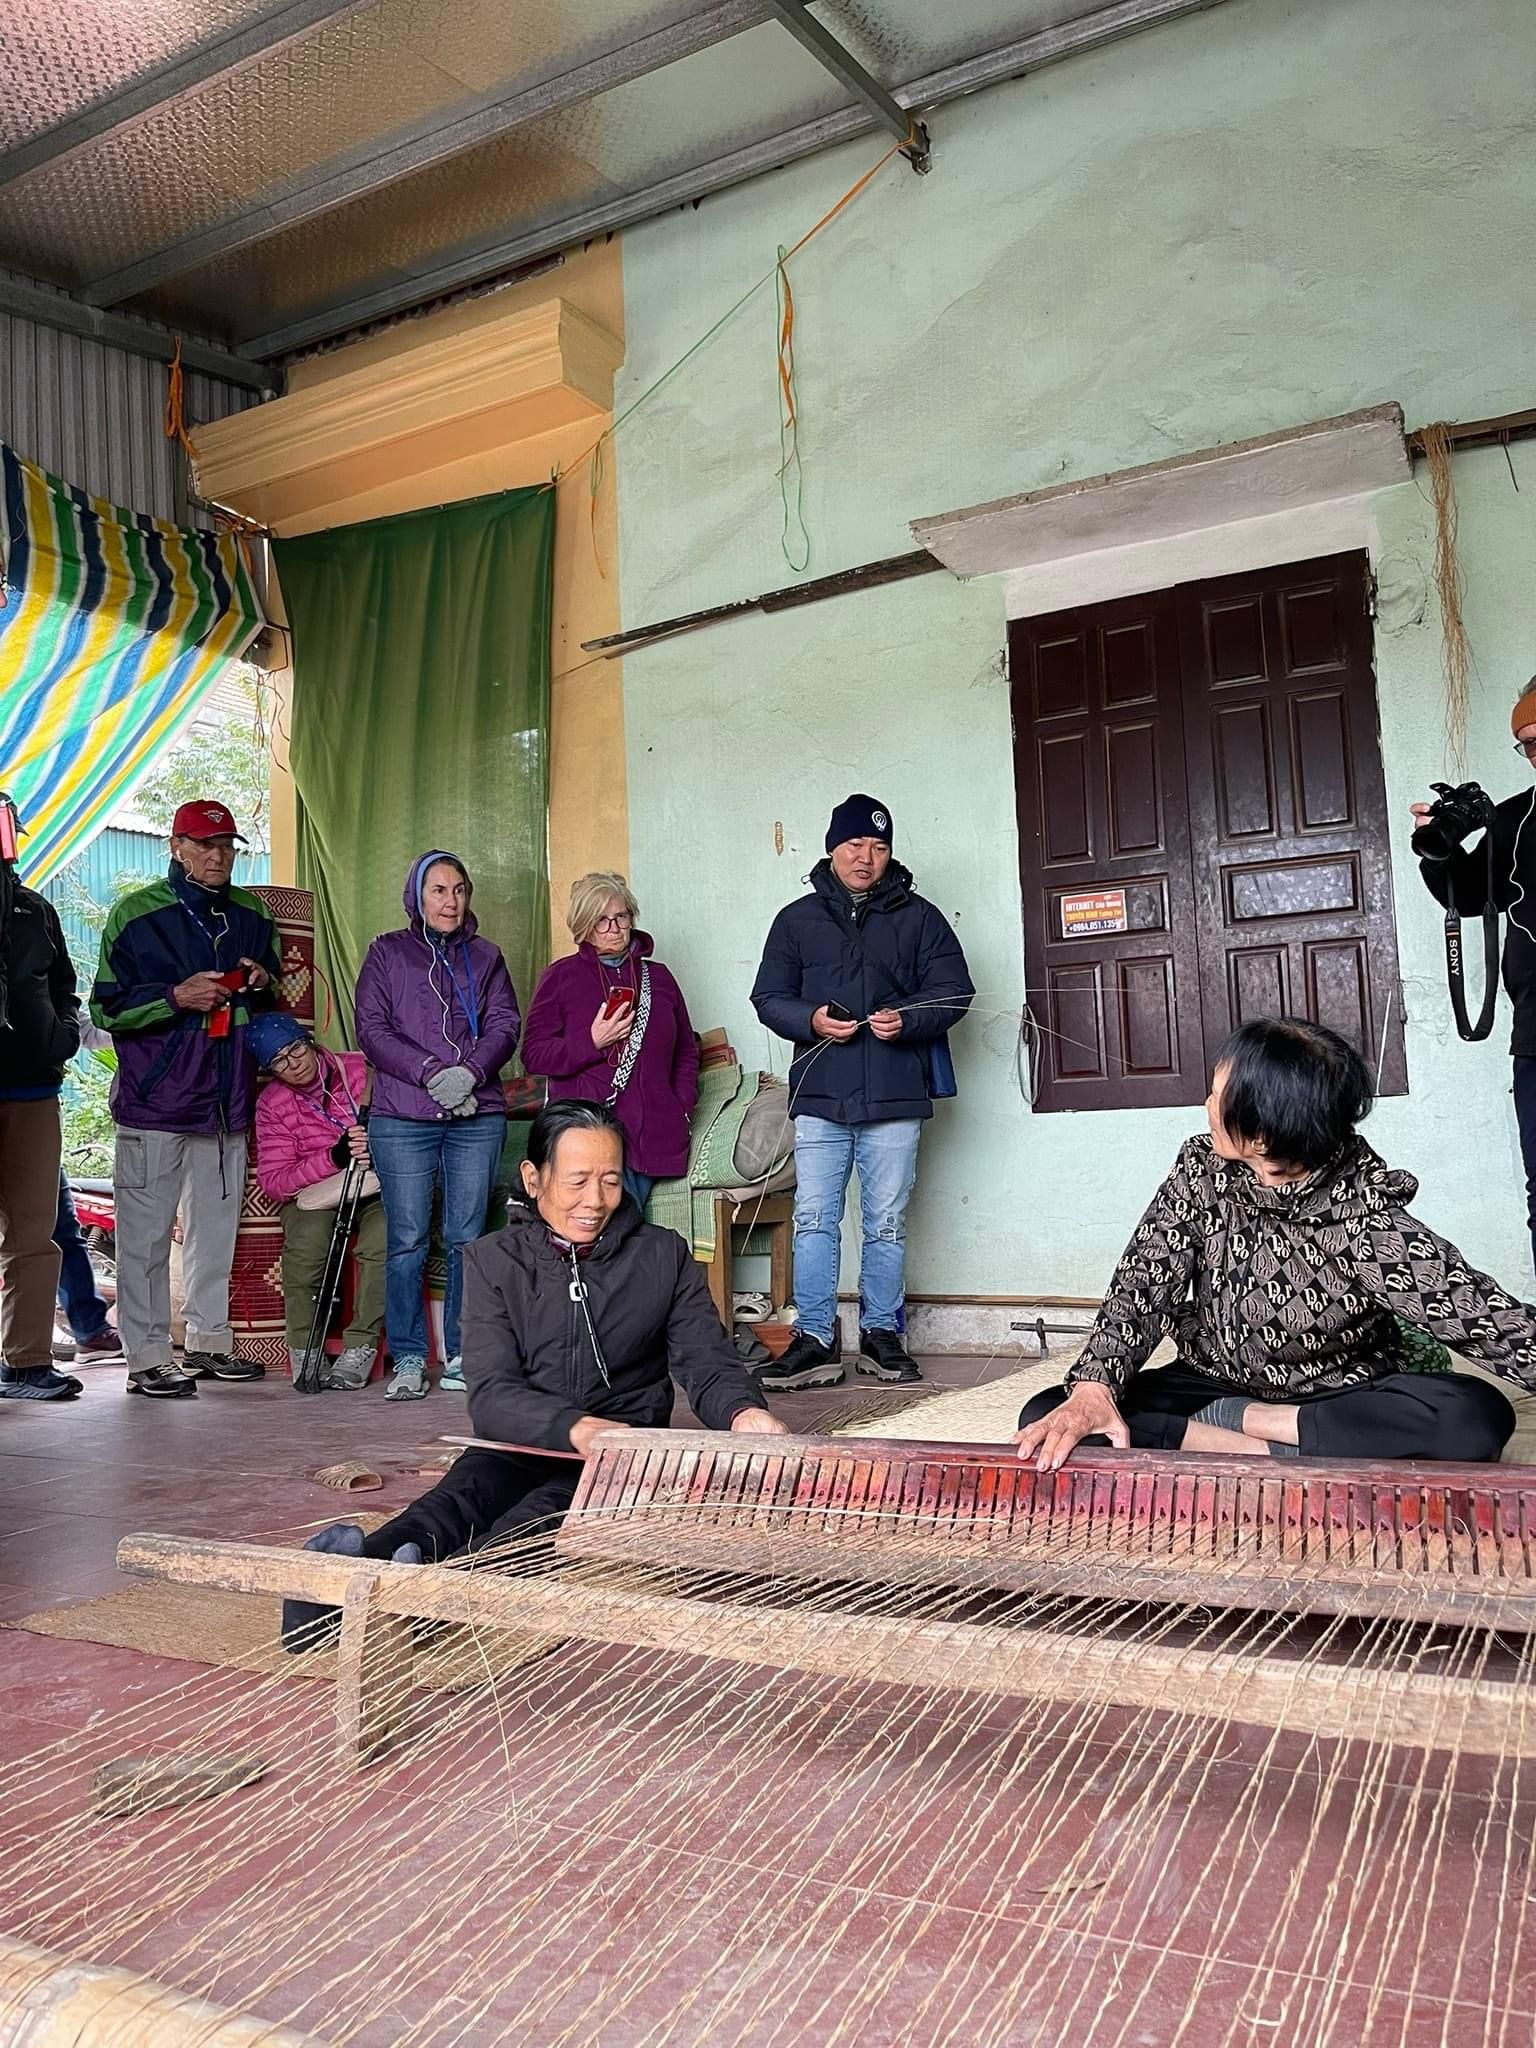 Đoàn khách du lịch châu Âu thăm quan nhà Bác Thành xóm Phú Hậu - Gia đình duy nhất còn làm nghề dệt chiếu cói thủ công xã Khánh Thiện